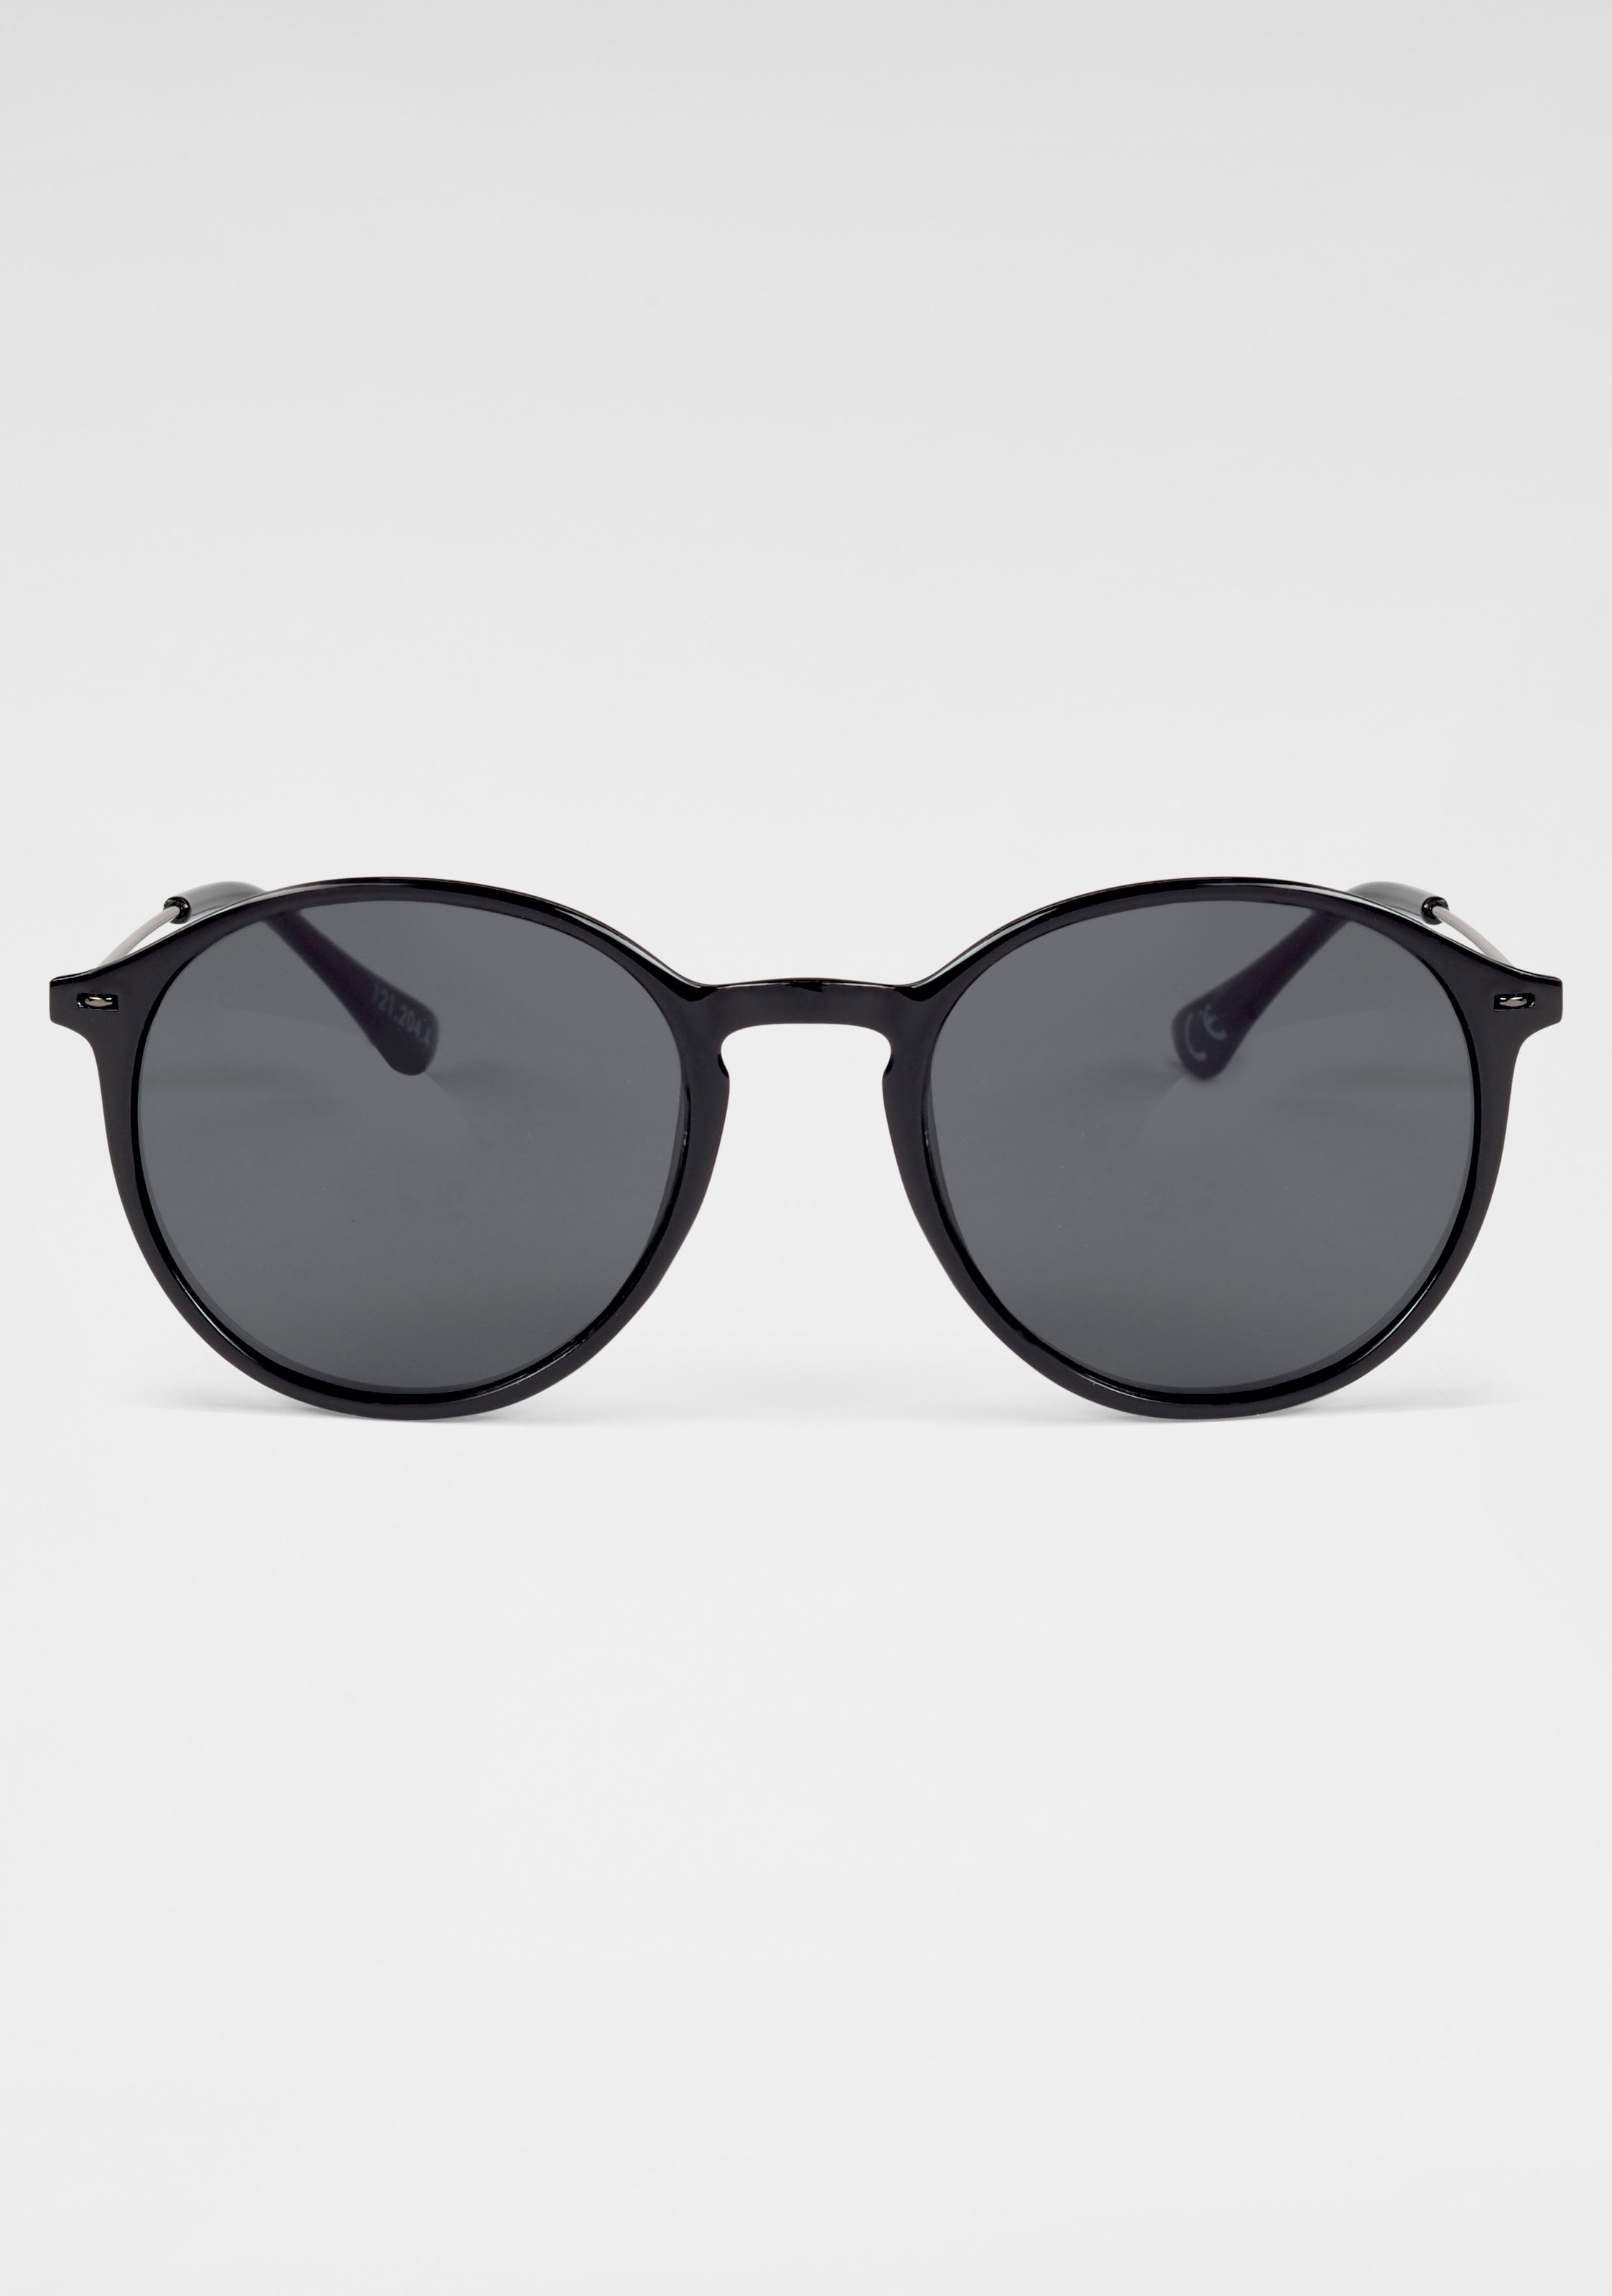 catwalk Eyewear Sonnenbrille, Filigrane Damen-Sonnenbrille mit Metallbügeln